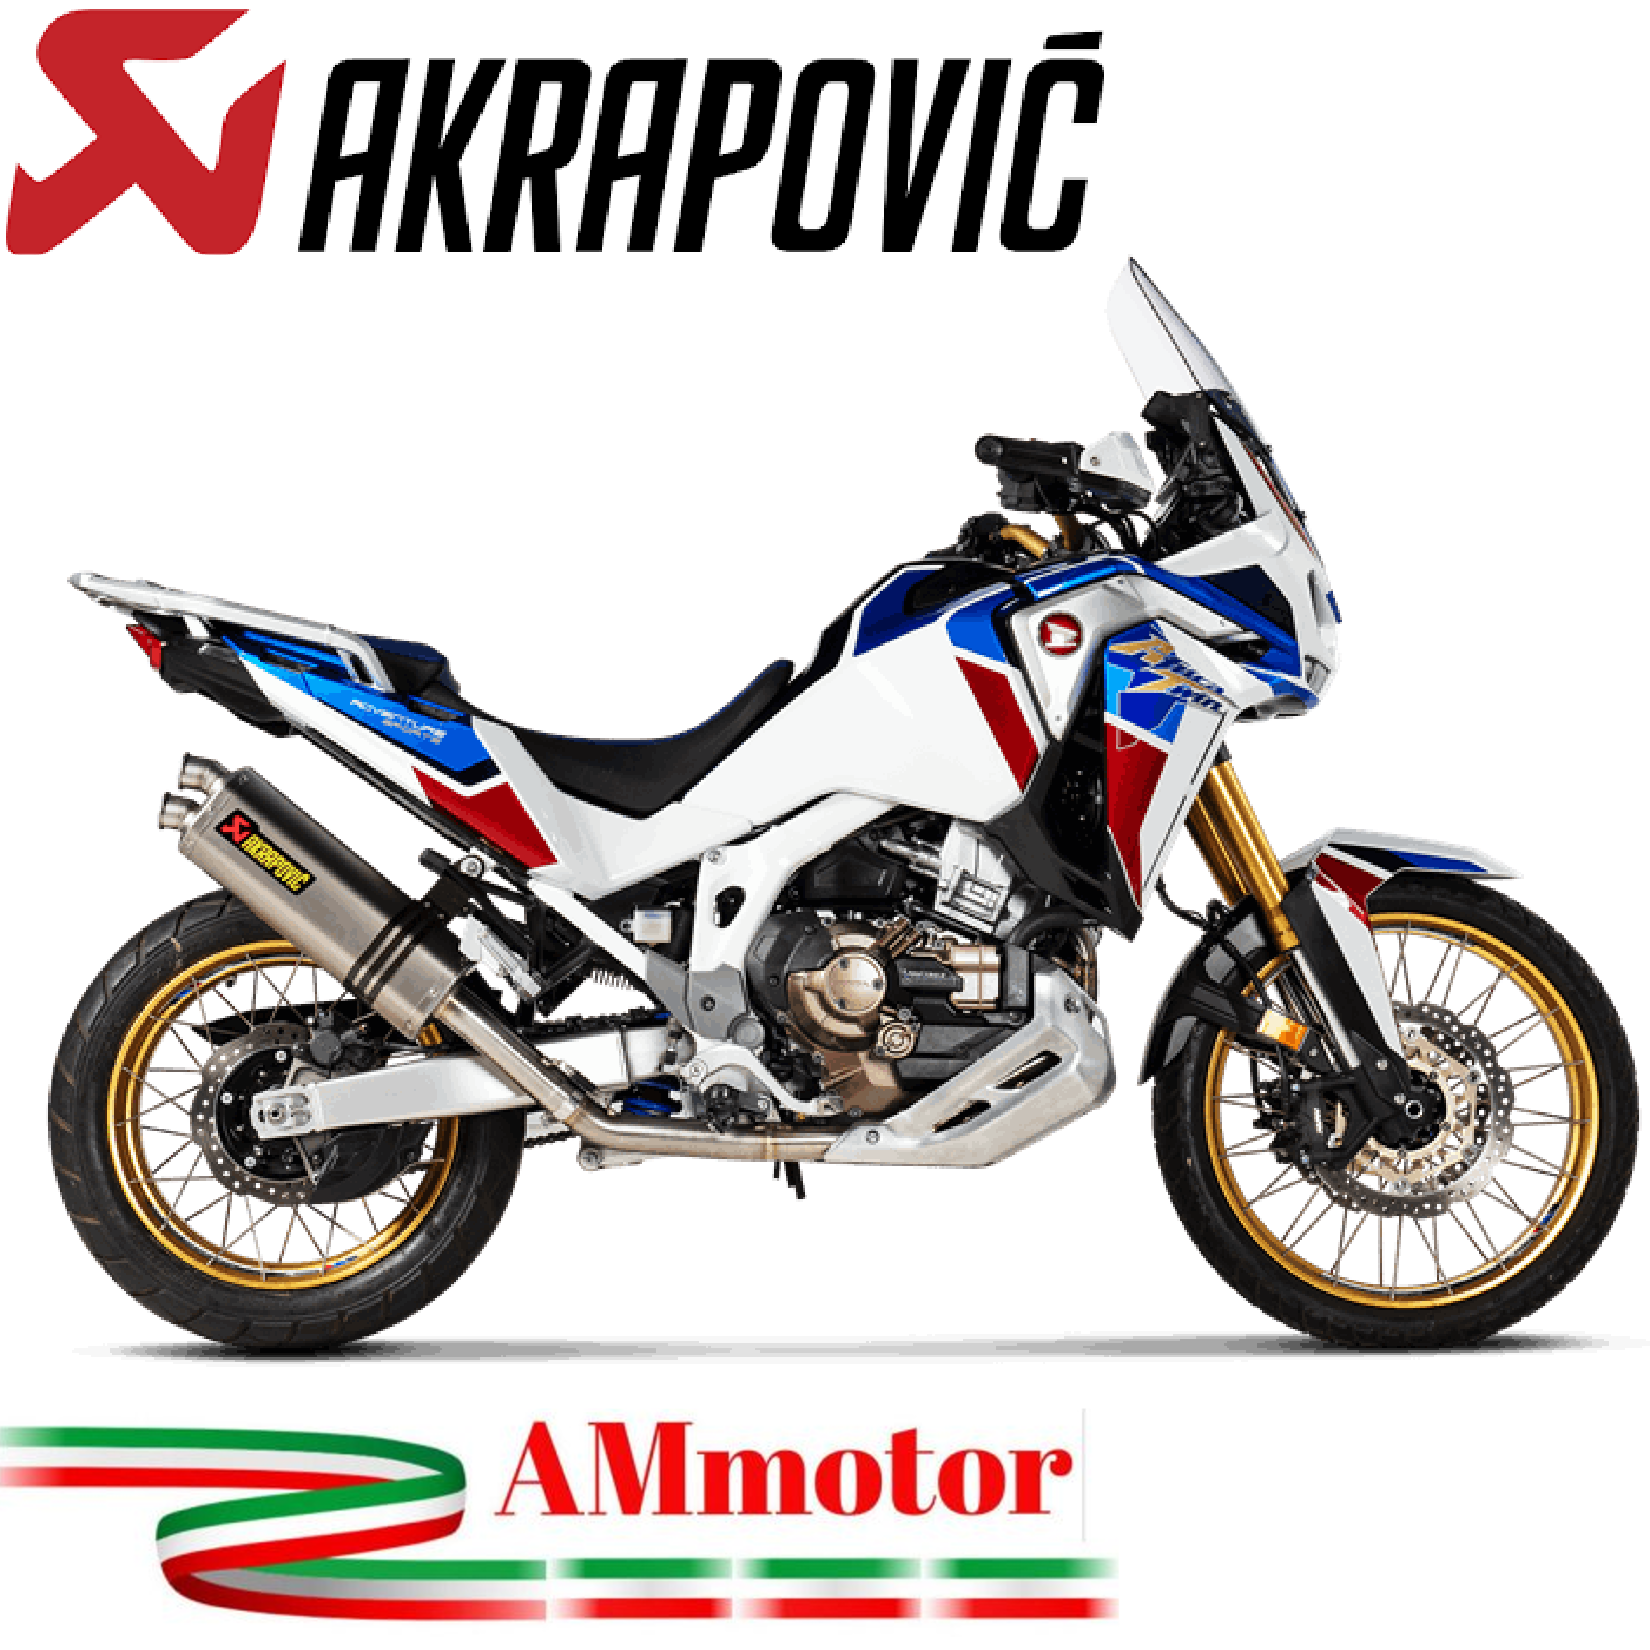 Akrapovic Honda Africa Twin 1100 Adv Sports Impianto Di Scarico Completo  Racing Line Terminale Titanio Moto